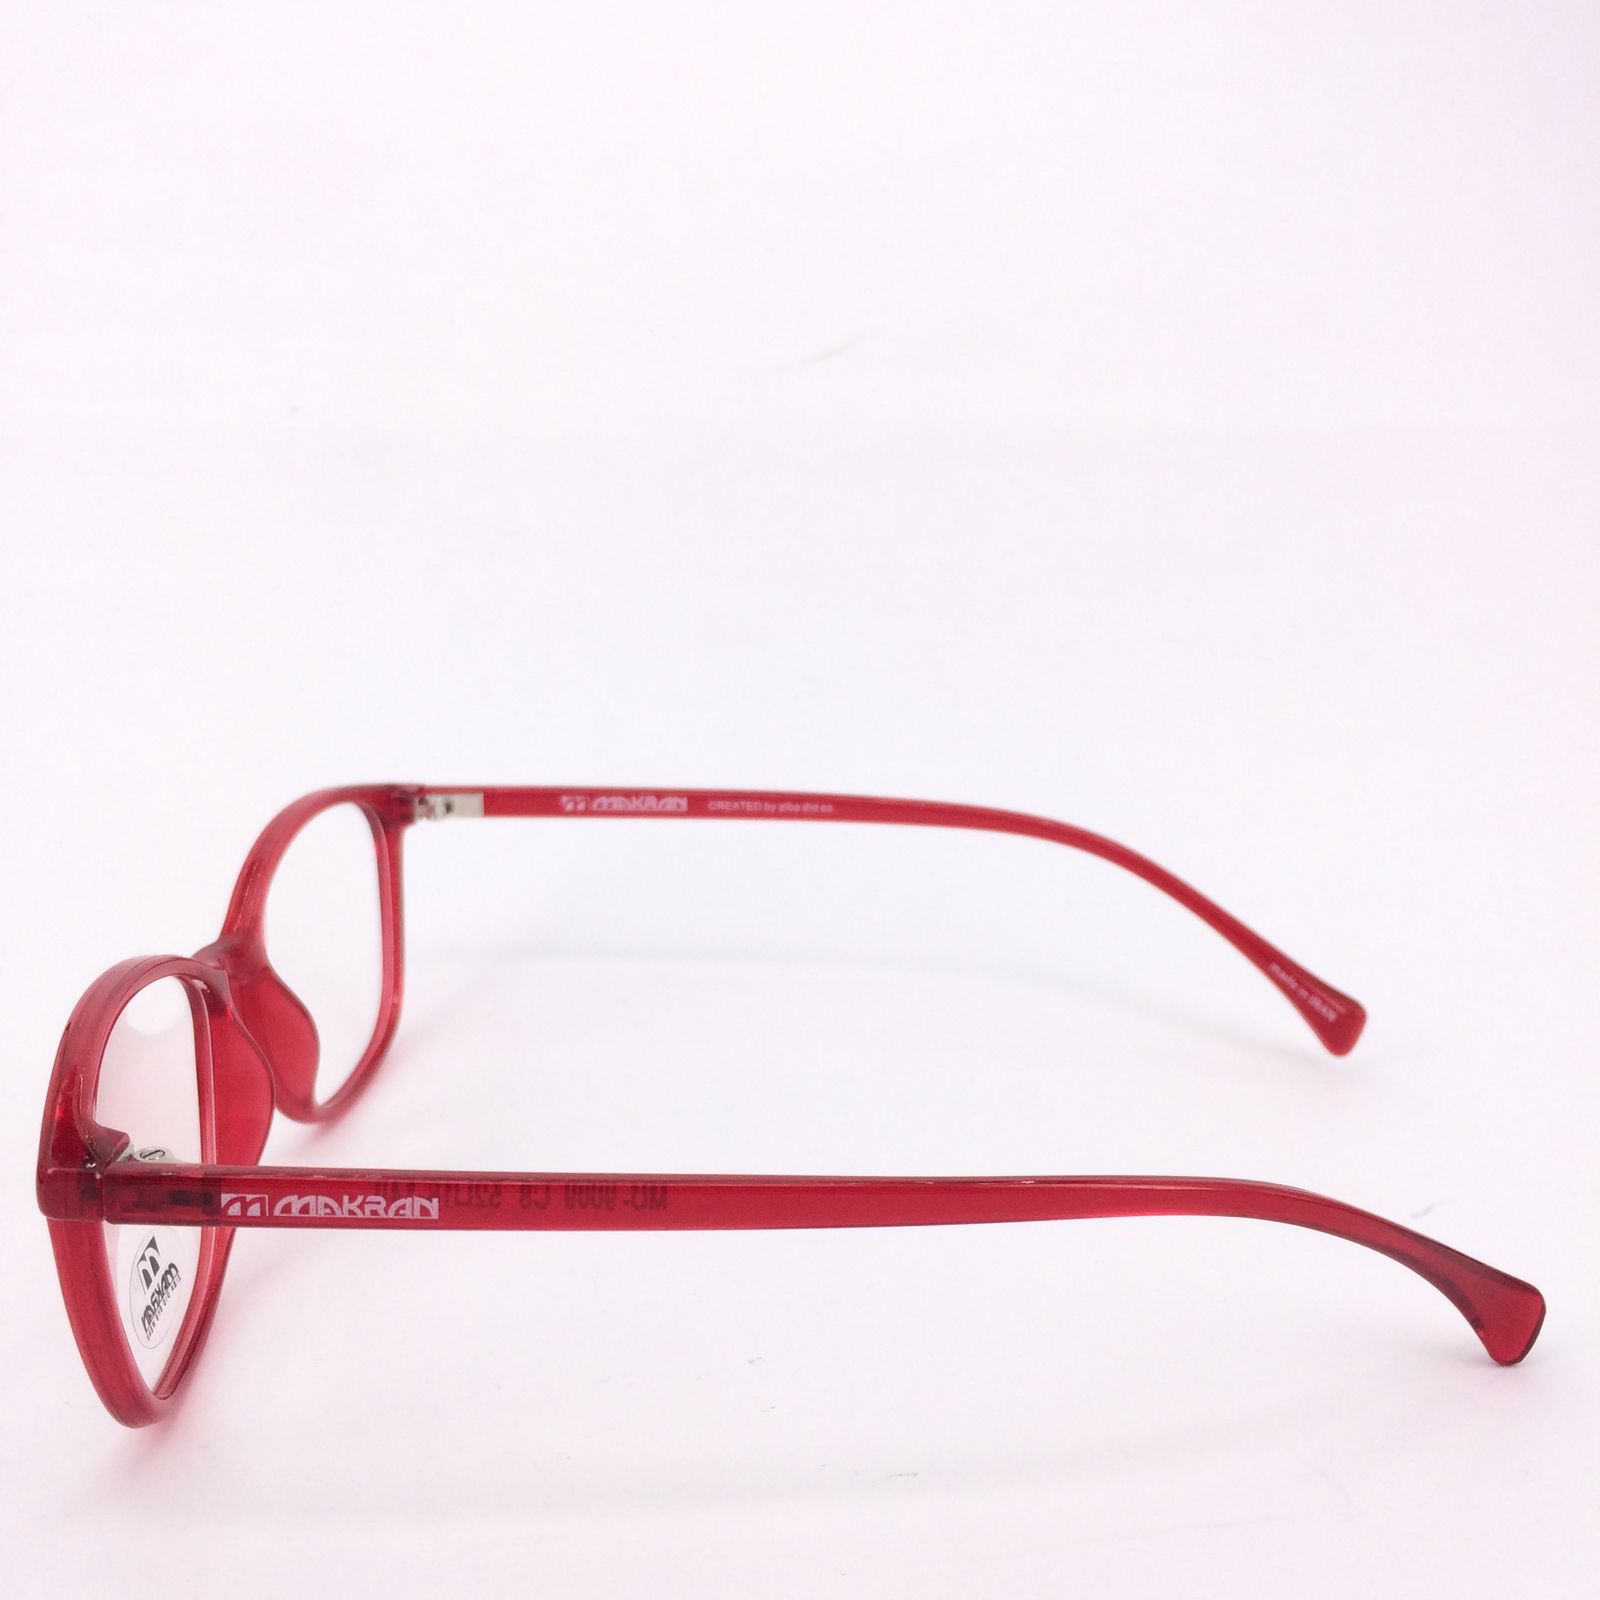 فریم عینک طبی مکران مدل  9009 c8 -  - 3